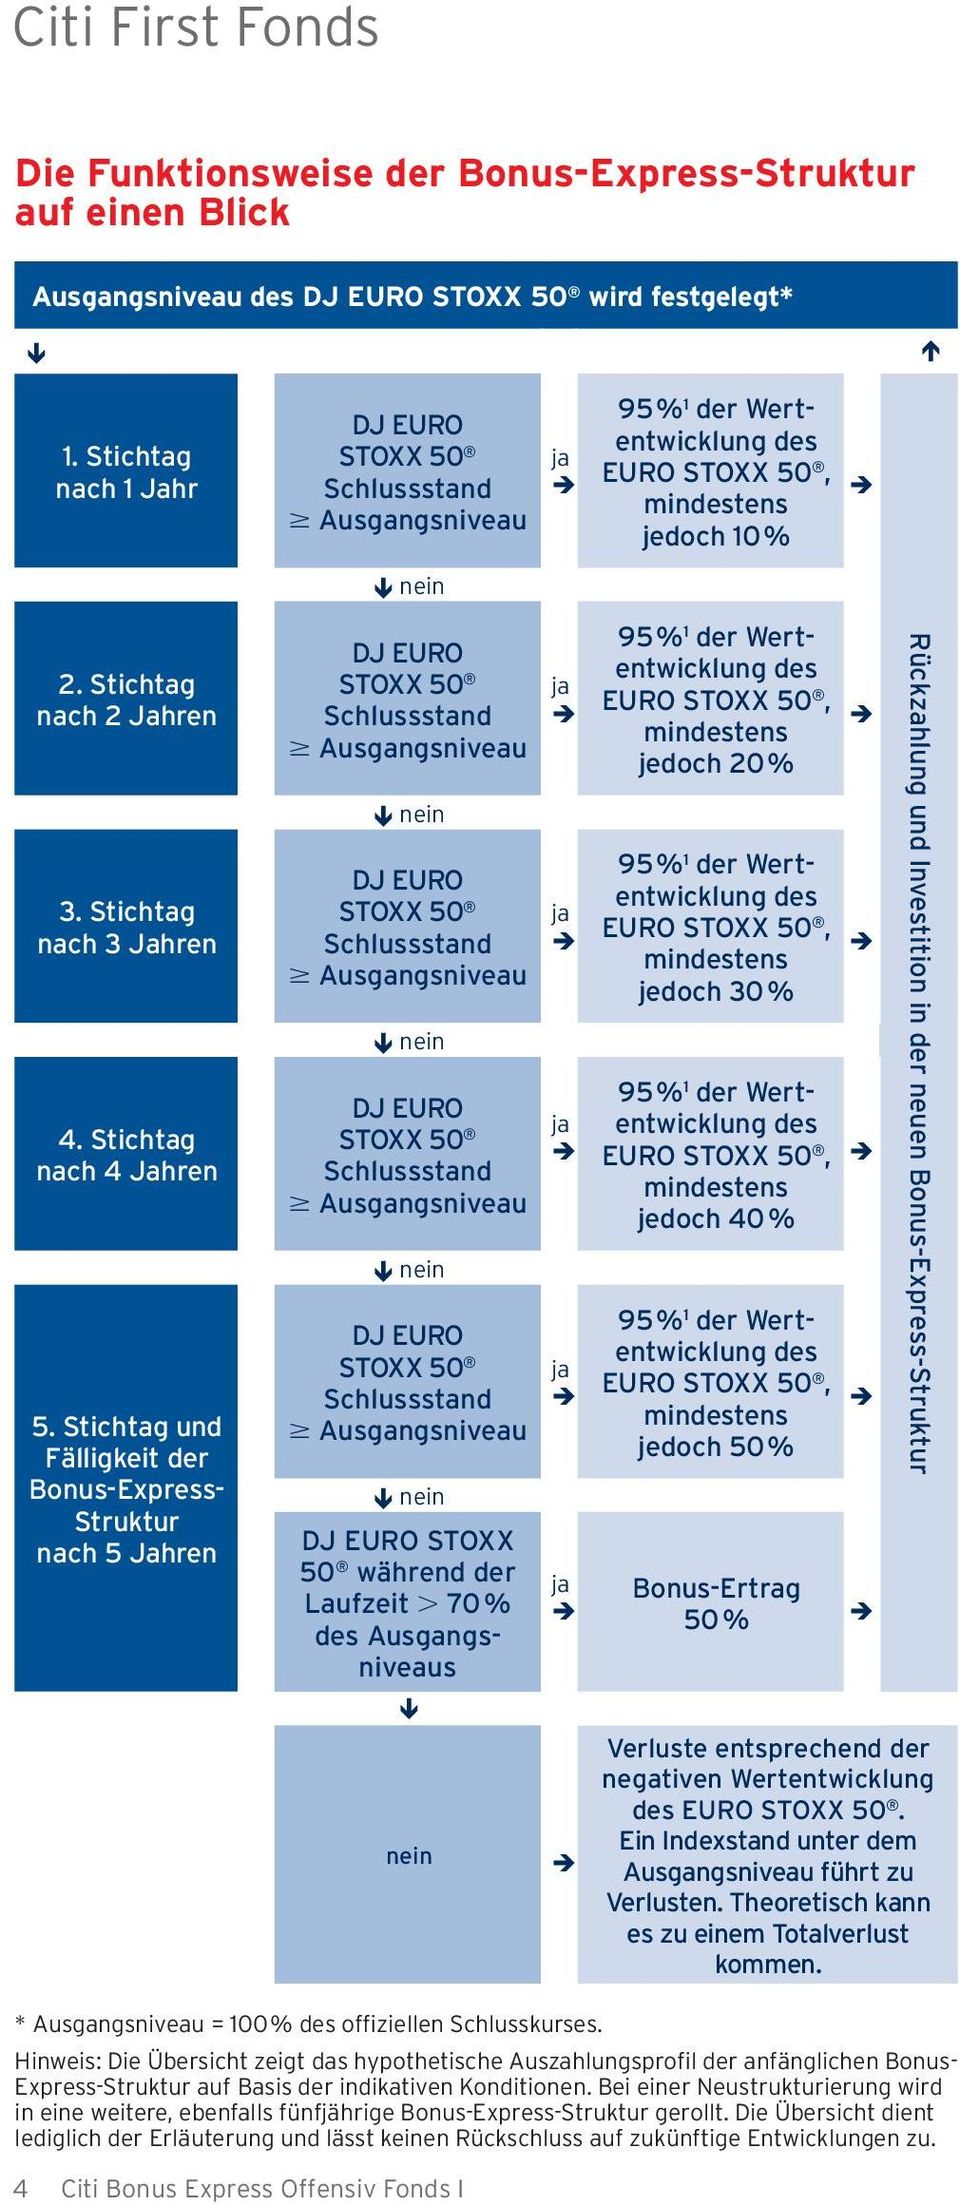 Stichtag und Fälligkeit der Bonus-Express- Struktur nach 5 Jahren STOXX 50 während der Laufzeit 70 % s Í nein EURO, jedoch 20 % EURO, jedoch 30 % EURO, jedoch 40 % EURO, jedoch 50 % Bonus-Ertrag 50 %